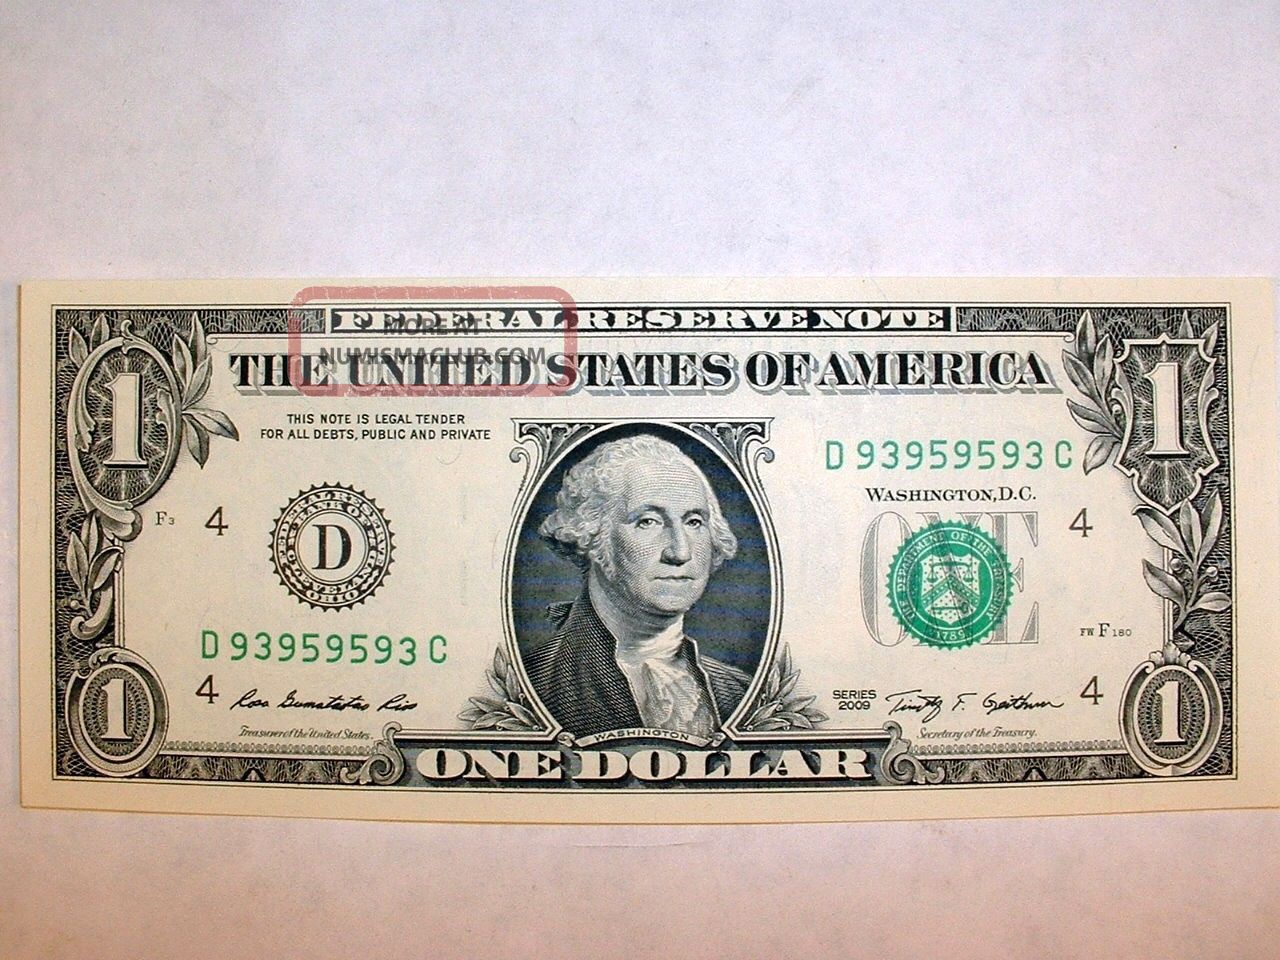 1969 20 dollar bill serial number lookup